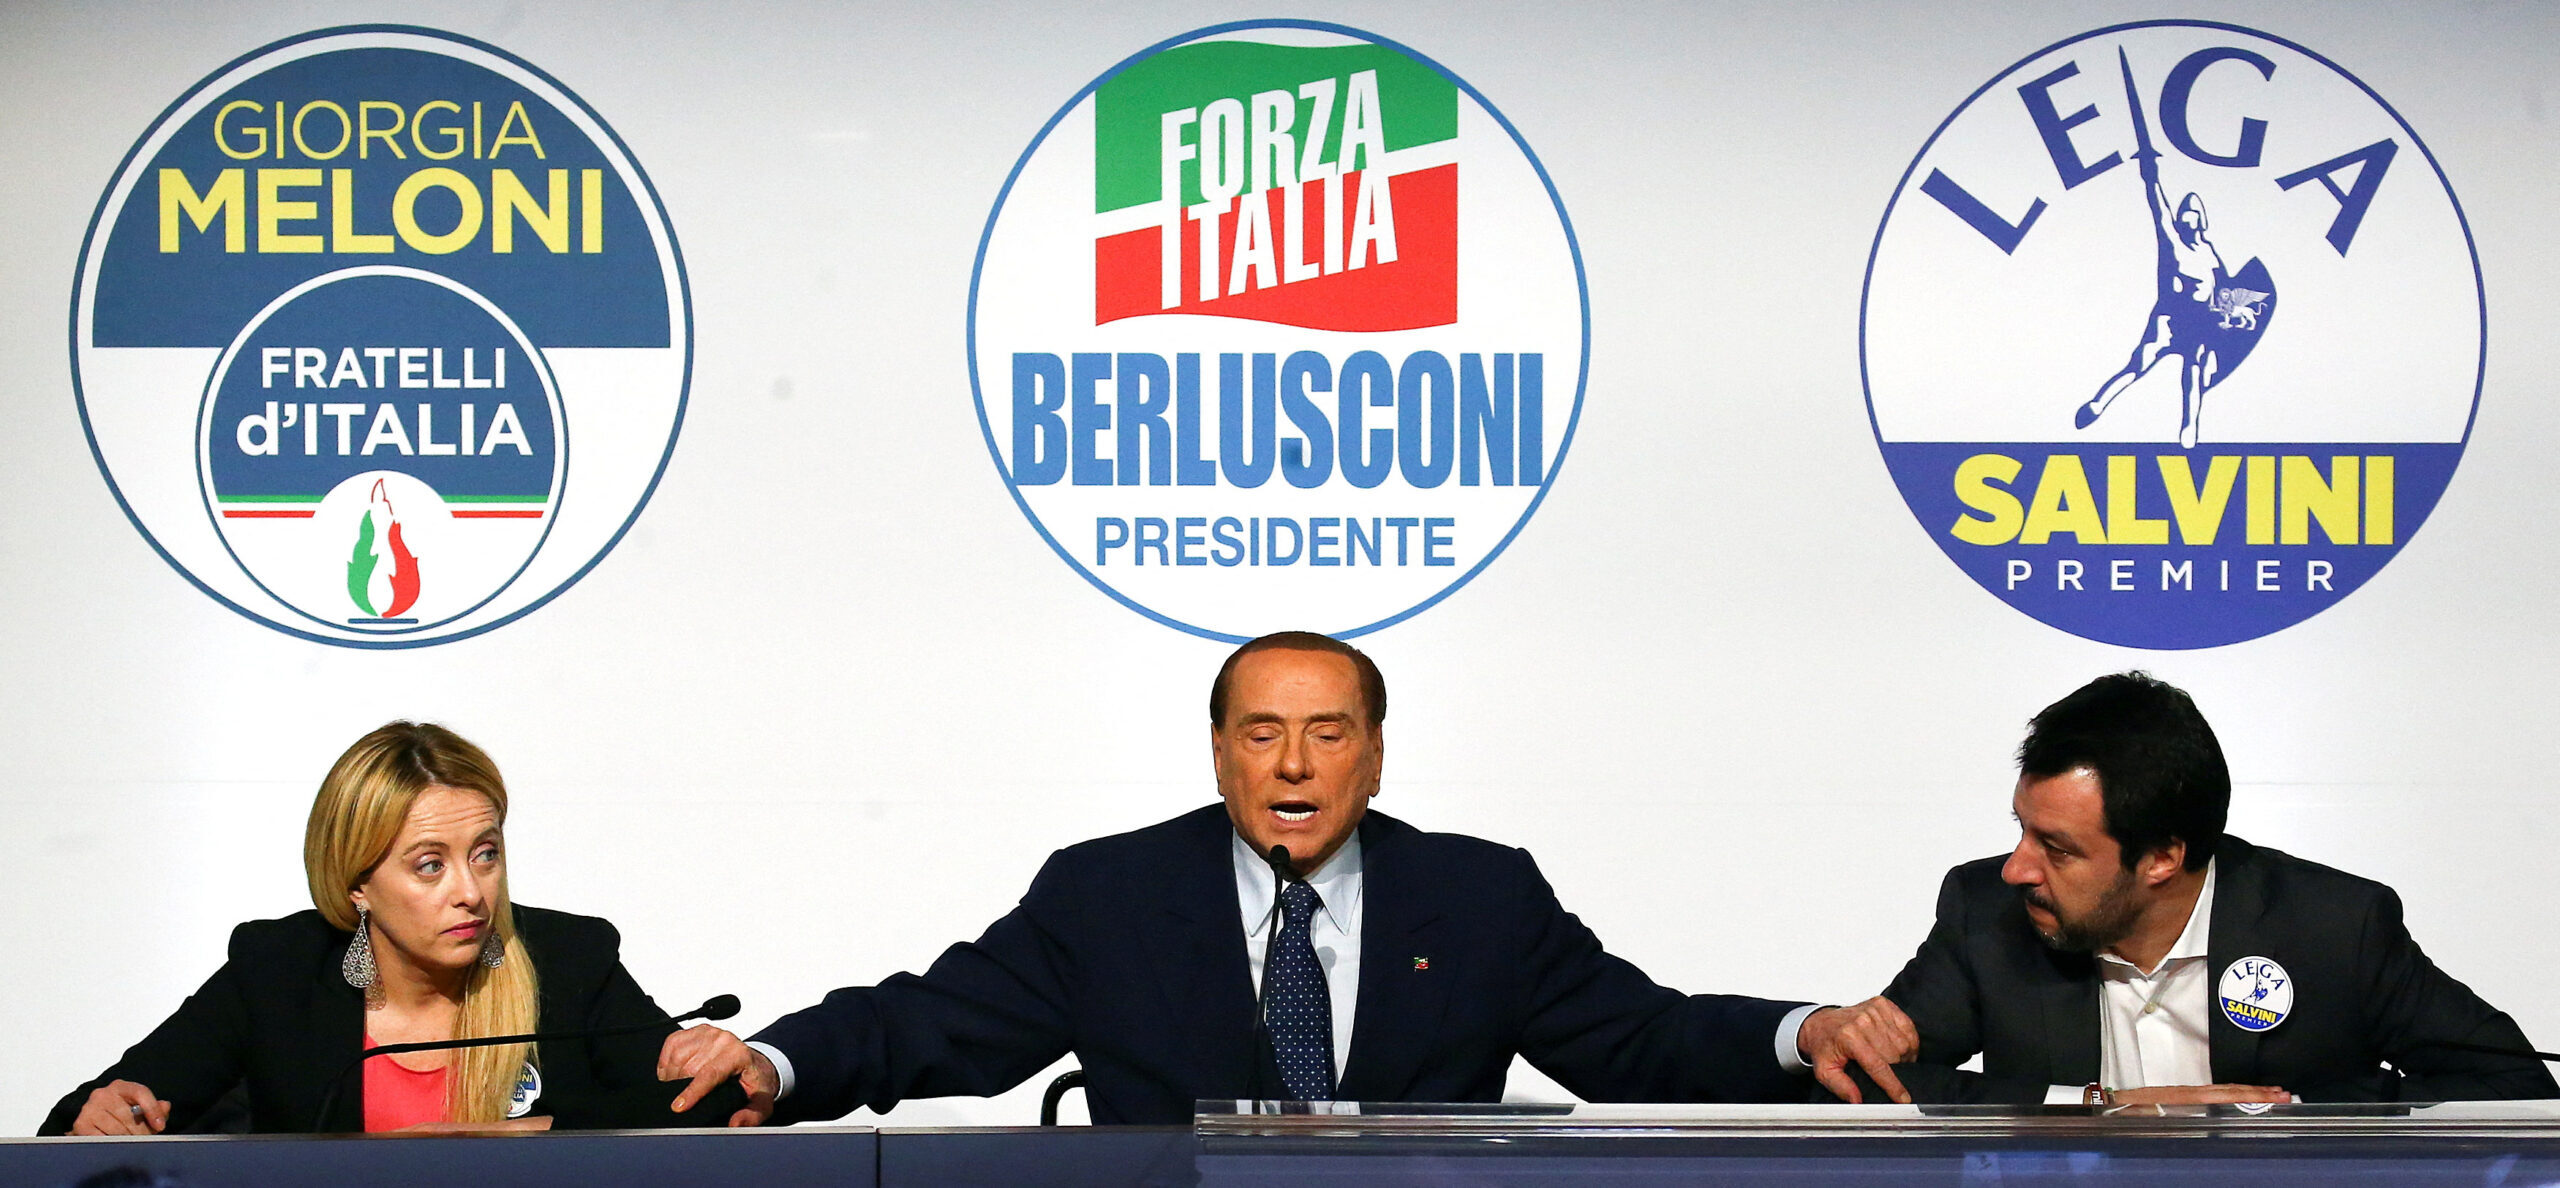 Italia celebra el domingo una de sus elecciones más importantes, consulta aquí las claves